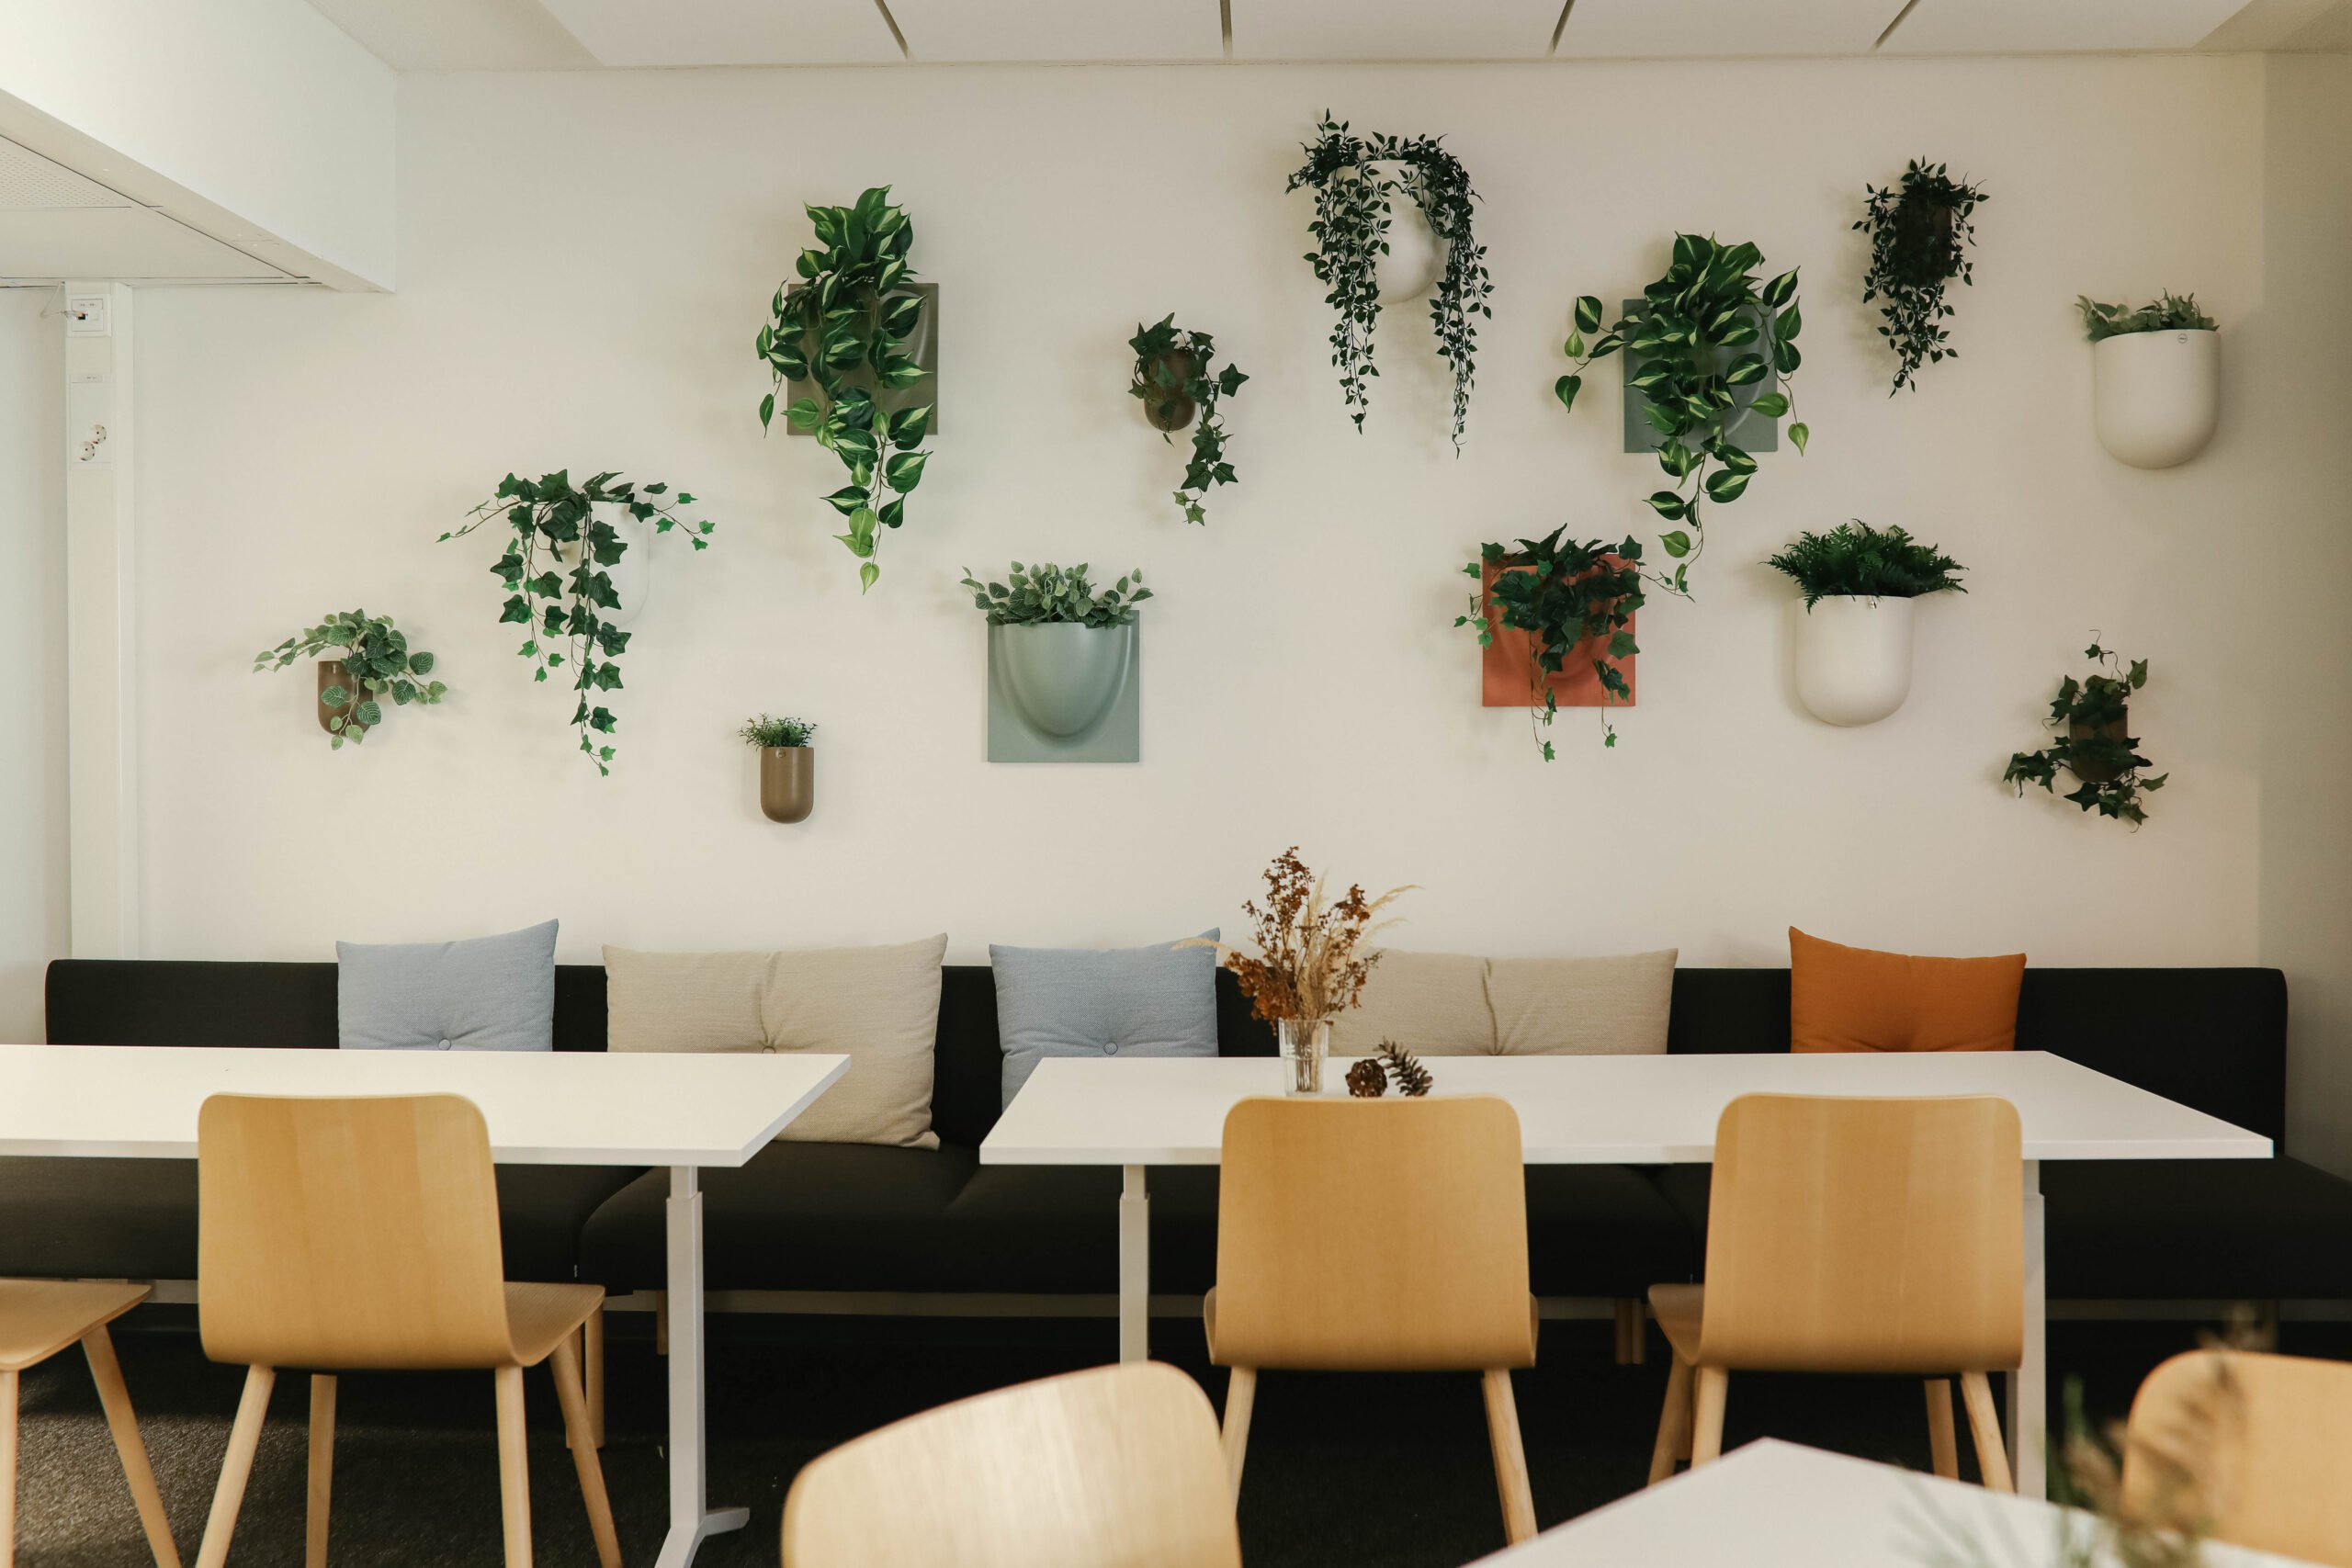 Tässä kuvassa on Joensuun toimiston taukotilan viherkasviseinä, jossa on viherkasveja erikokoisissa ruukuissa seinällä sekä sen edessä penkkejä ja tuoleja